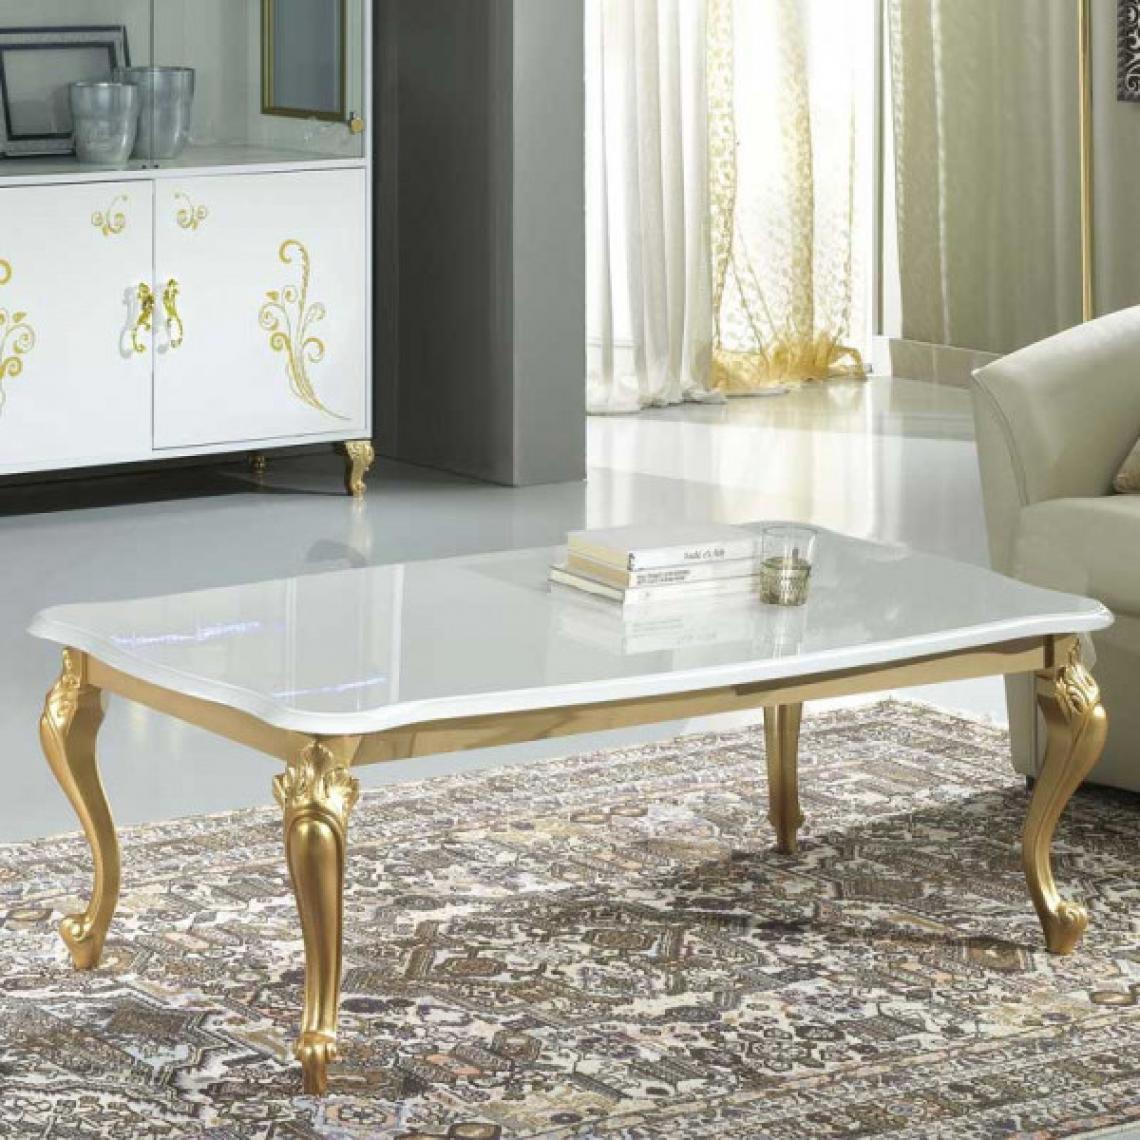 Dansmamaison - Table basse Laque Blanc Brillant / Or - SEBORGA - L 120 x l 68 x H 43 cm - Tables basses